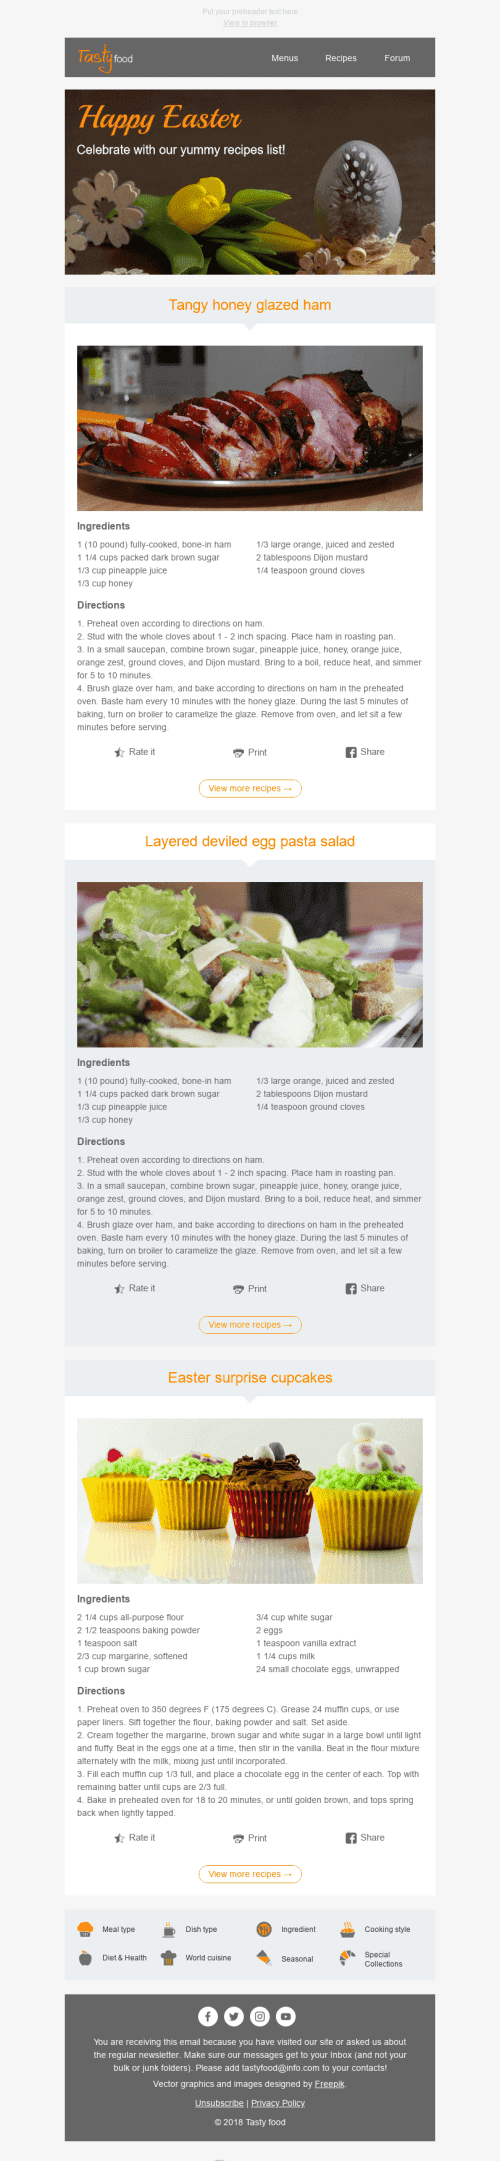 Plantilla de correo electrónico "Las mejores recetas" de Semana Santa para la industria de Gastronomía mobile view